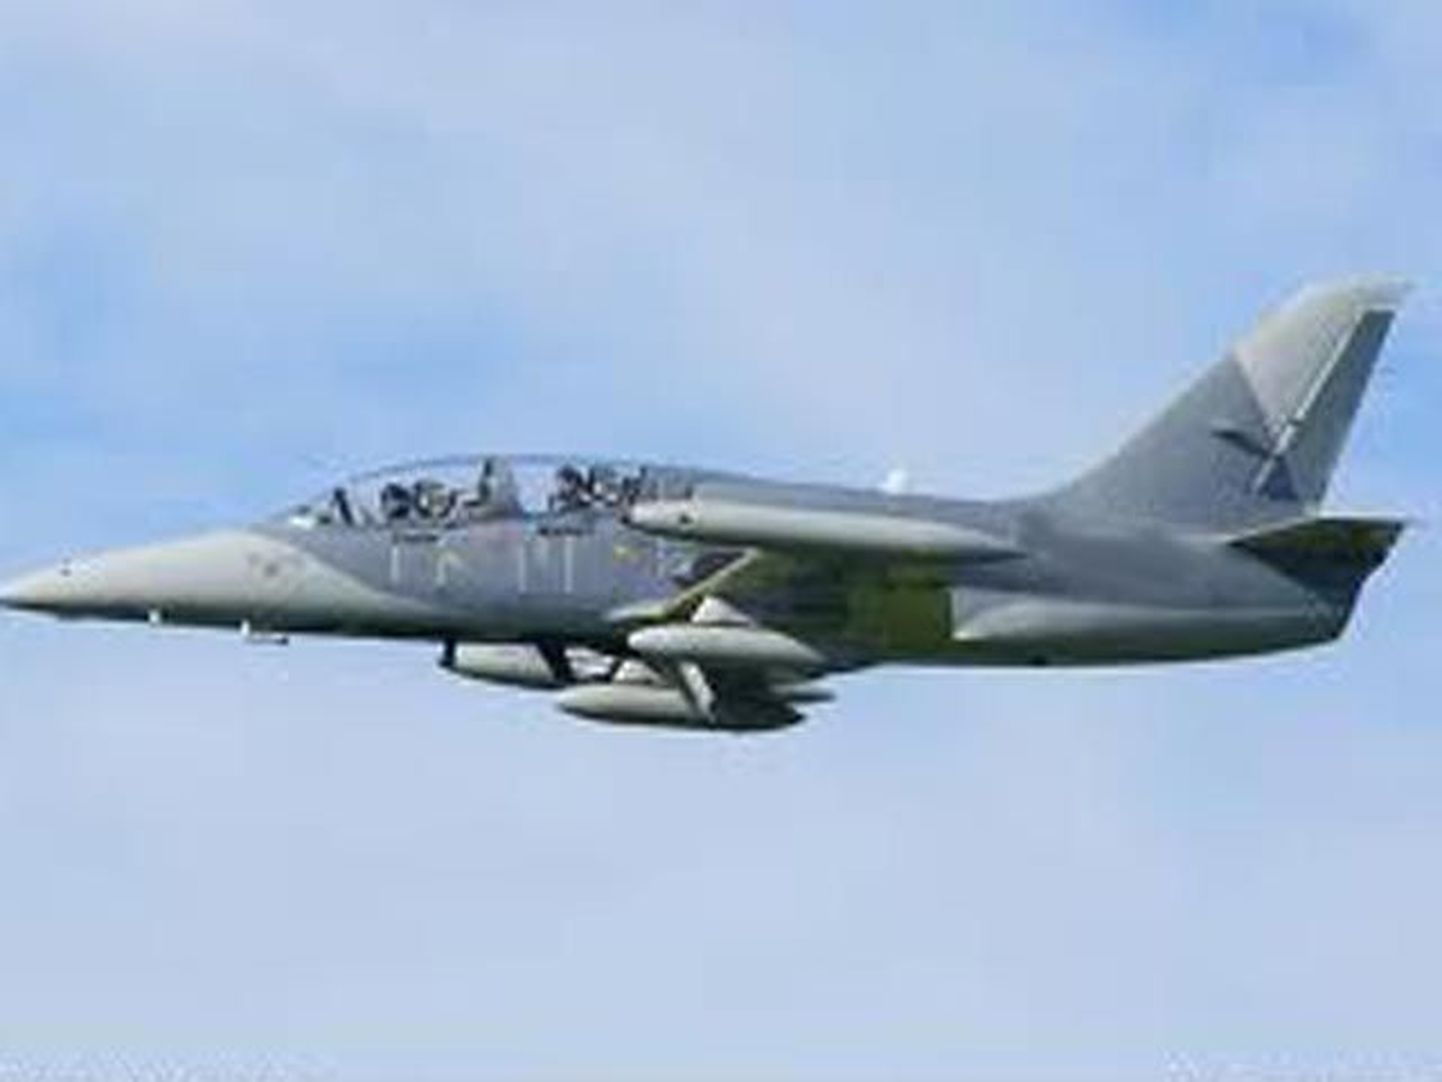 Учебно-тренировочный самолет L-39 Albatross разбился в американском штате Айова на глазах у тысяч посетителей авиашоу, пилот погиб